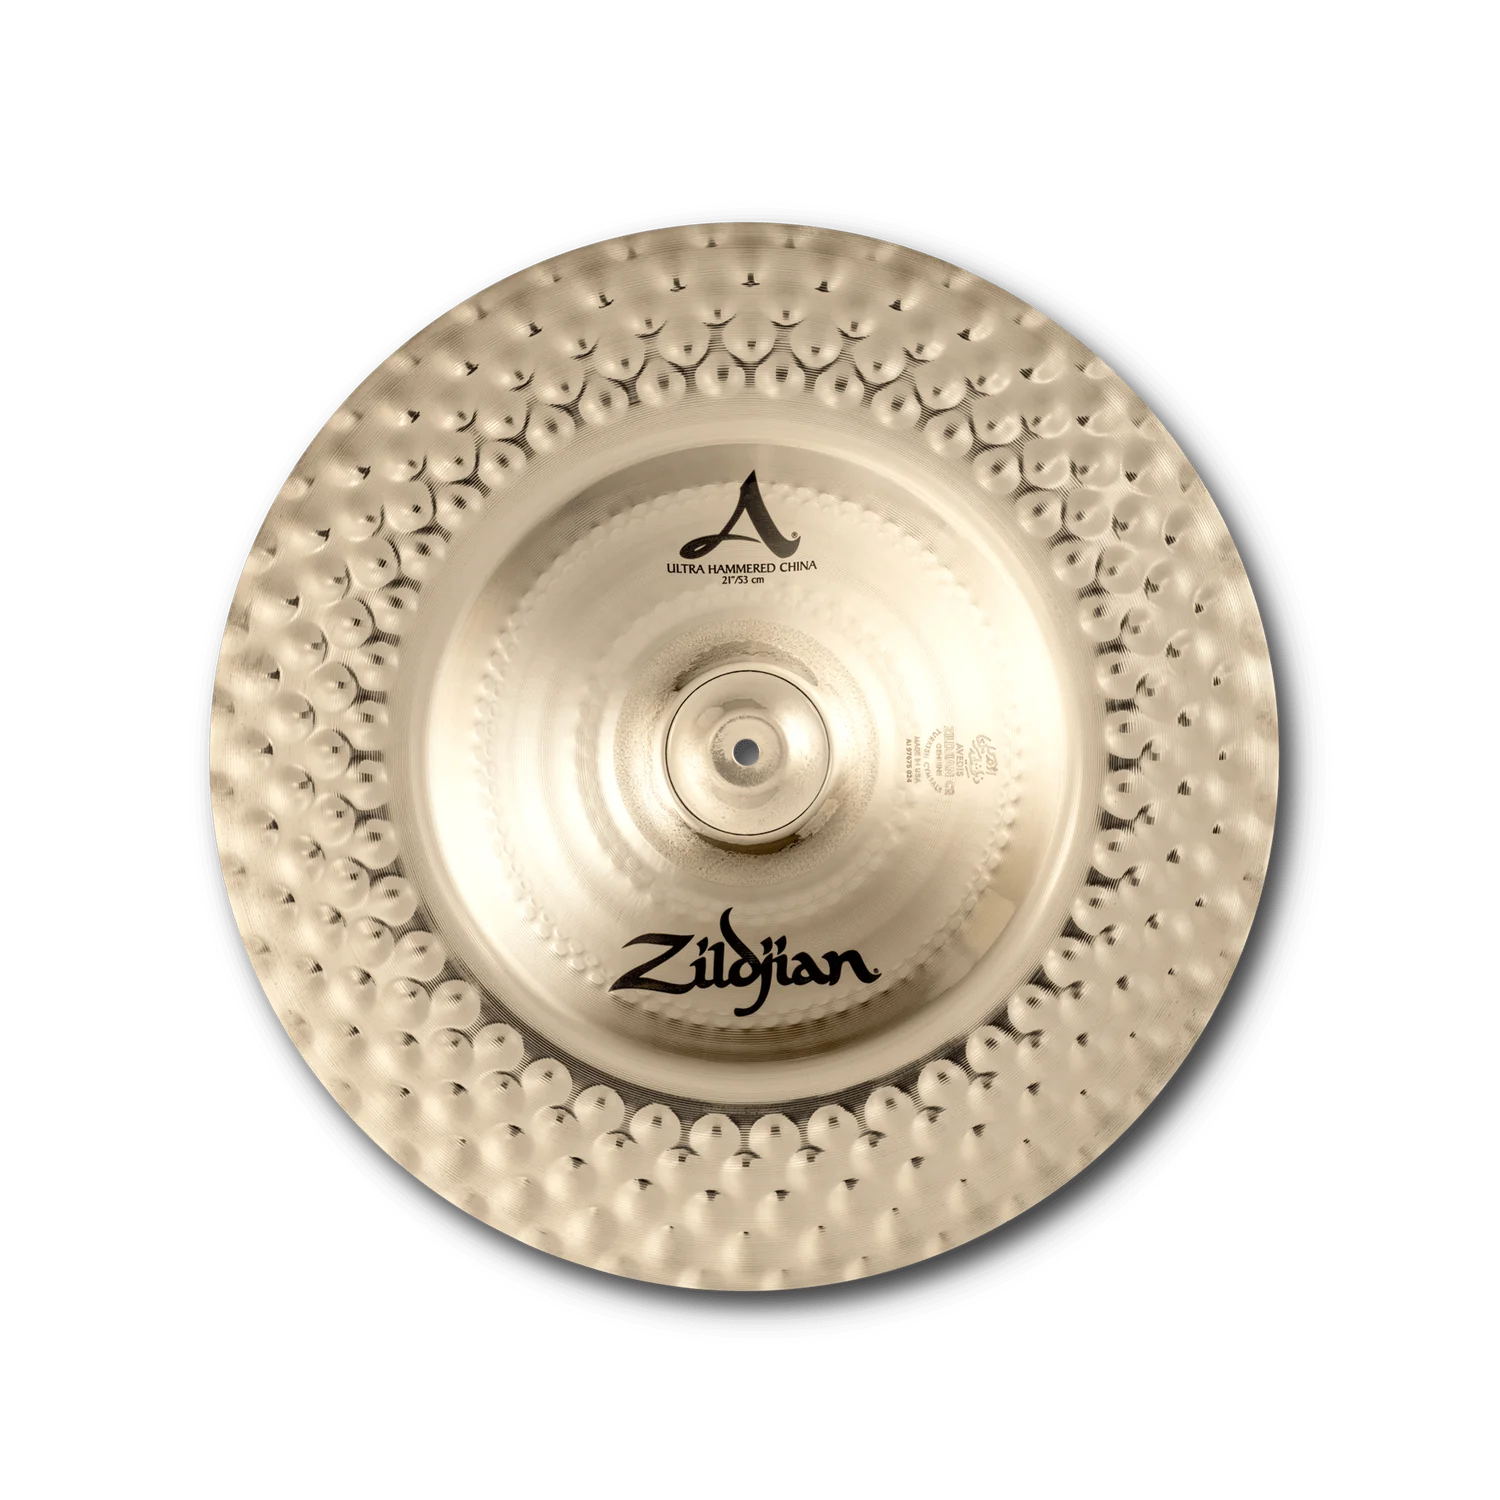 Zildjian A0361 21" A Ultra Hammered China